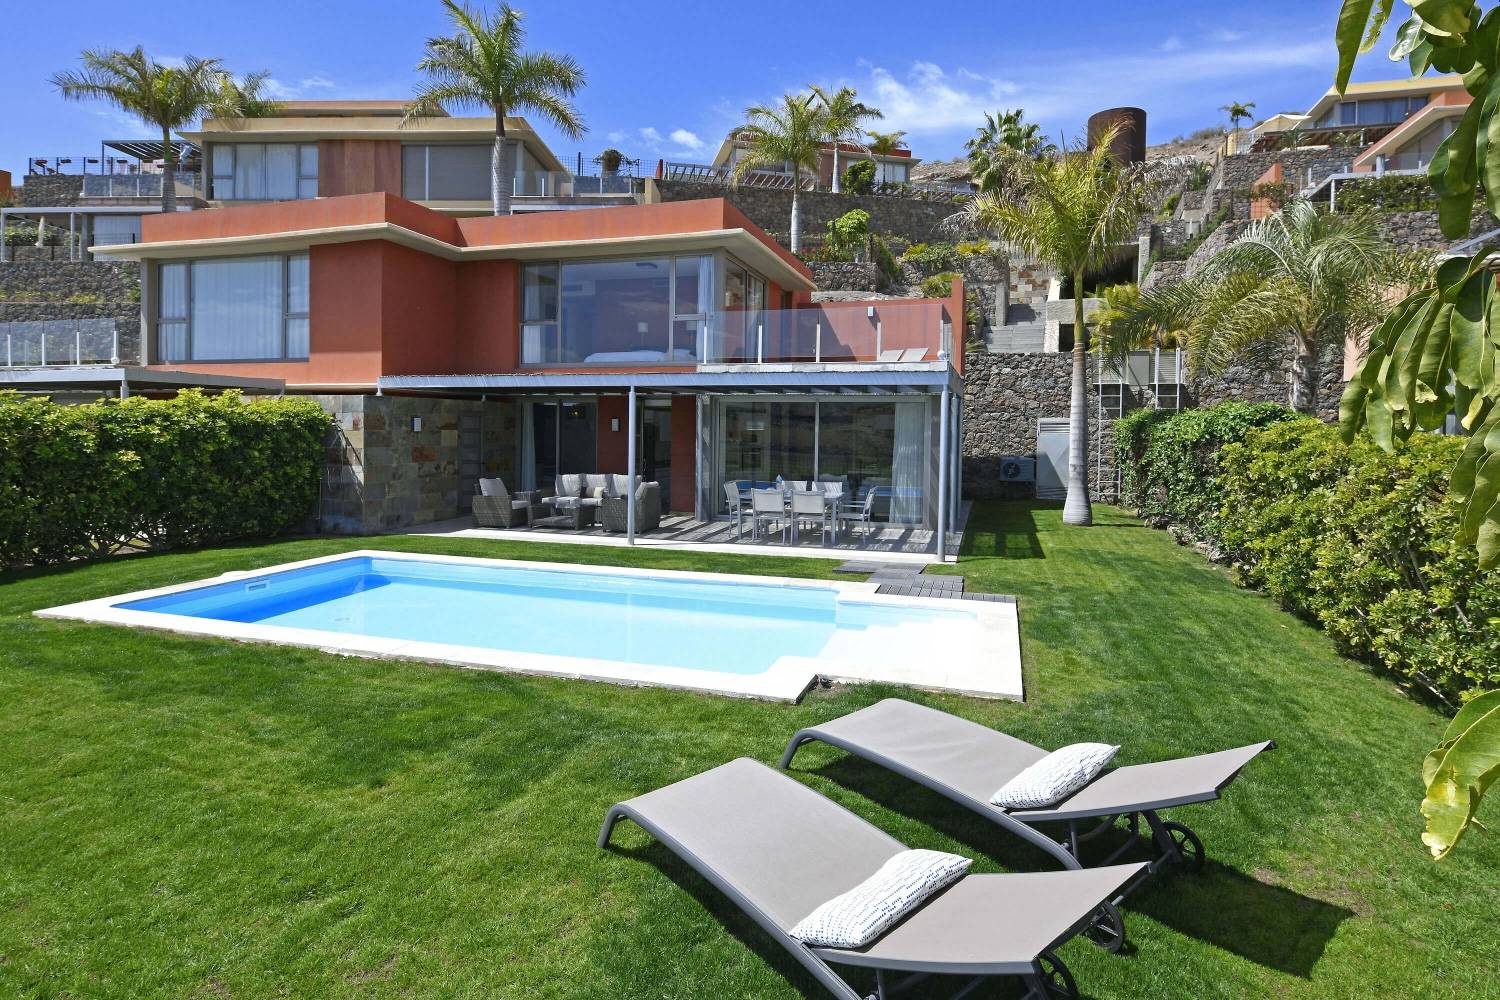 Stijlvolle villa direct aan de golfbaan met een modern interieur, tuin met privézwembad en een prachtig uitzicht